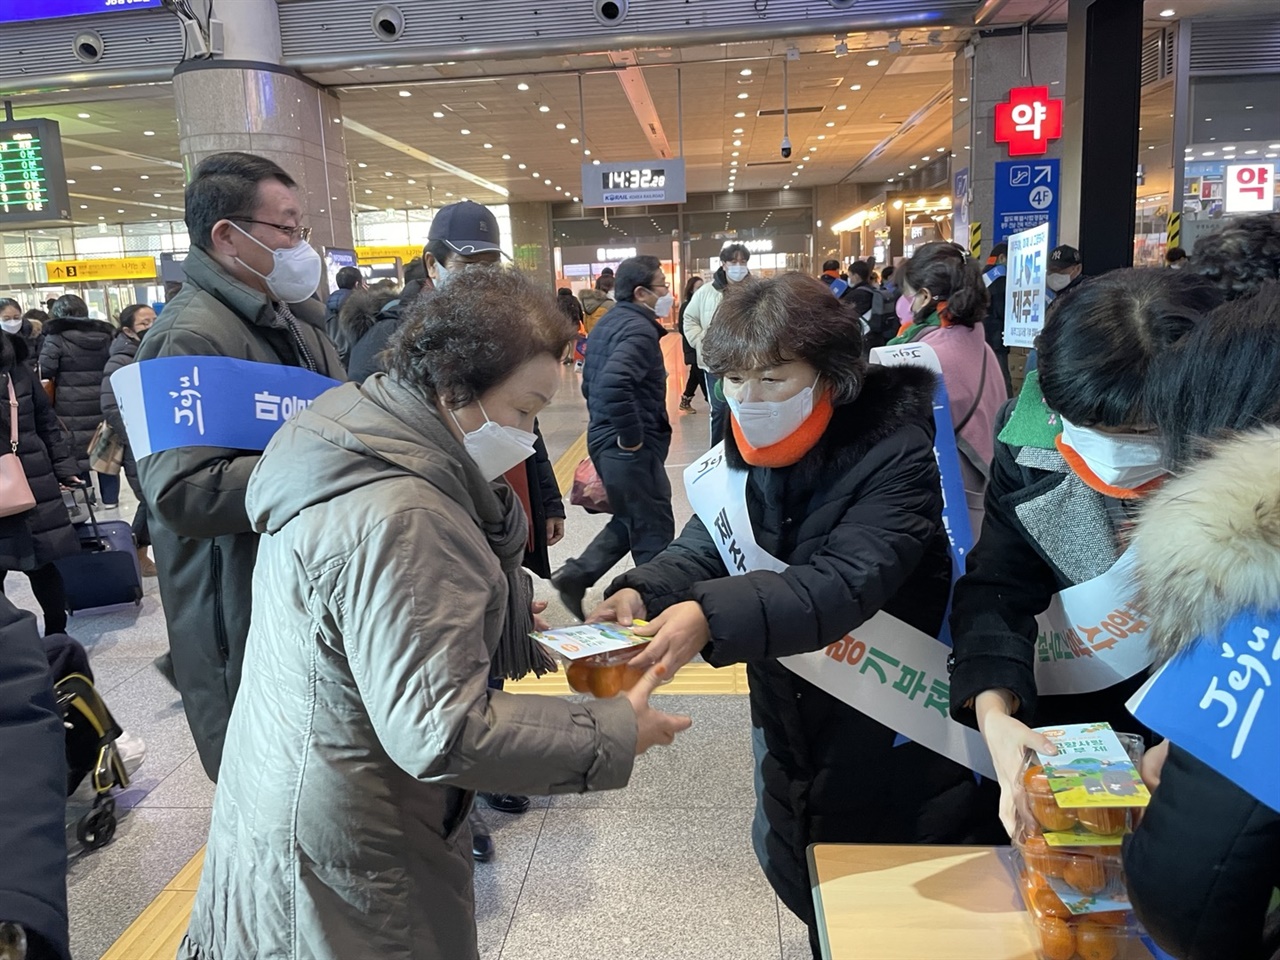 고향사랑기부제 홍보활동을 하는 서울제주도민회 회원들